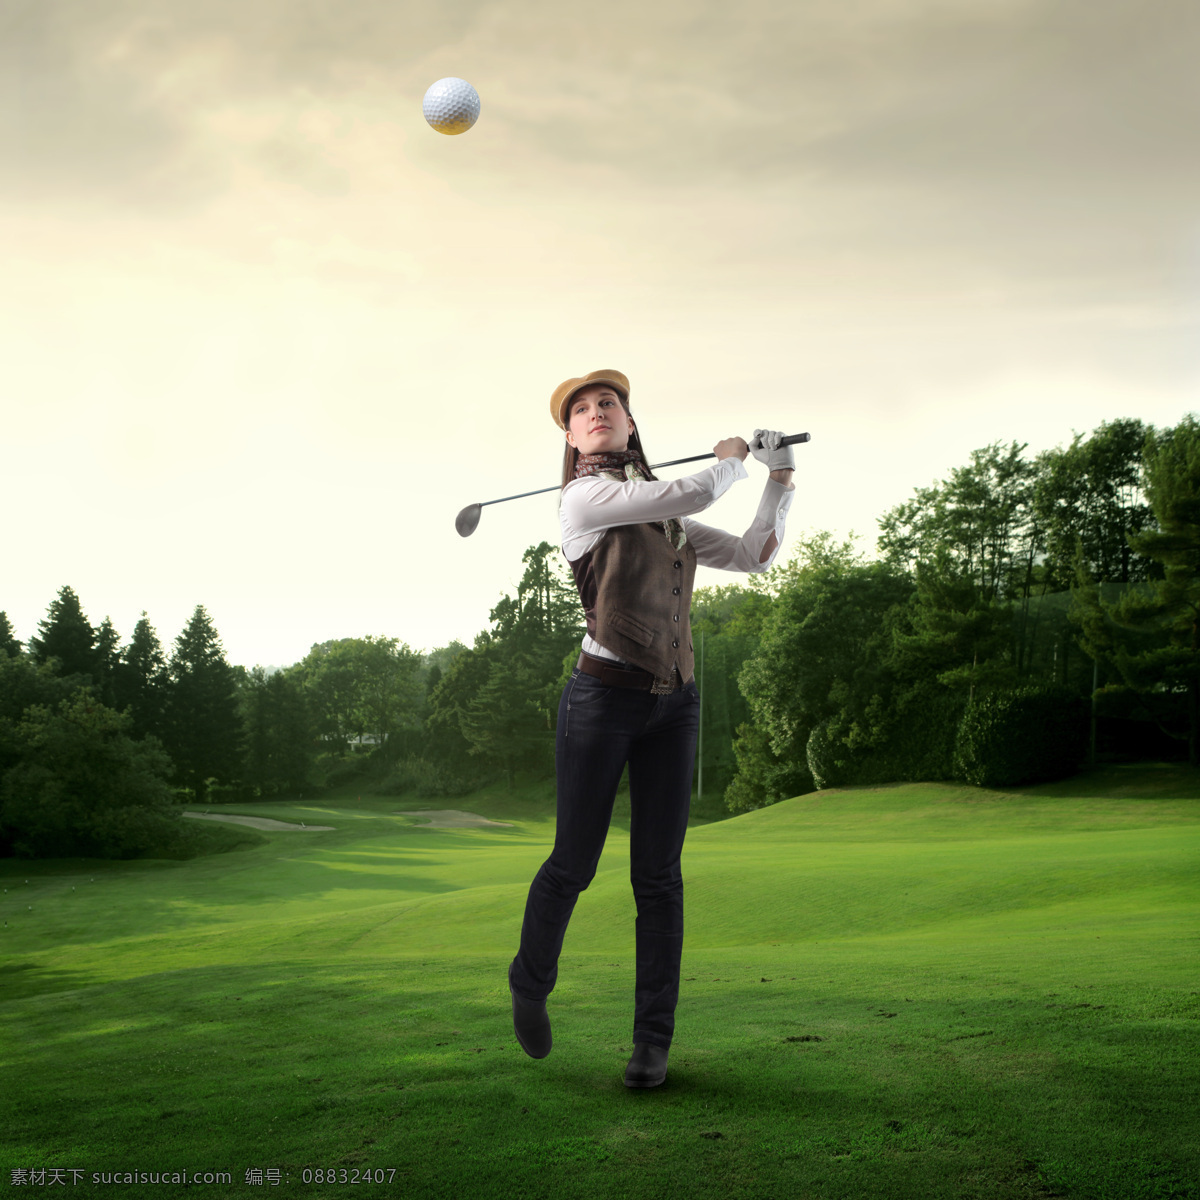 高尔夫 草地 人物 女性 运动 娱乐休闲 高尔夫剪影 高尔夫挥杆 高尔夫草地 背景 高尔夫会所 高尔场地 高尔夫人物 美女图片 人物图片